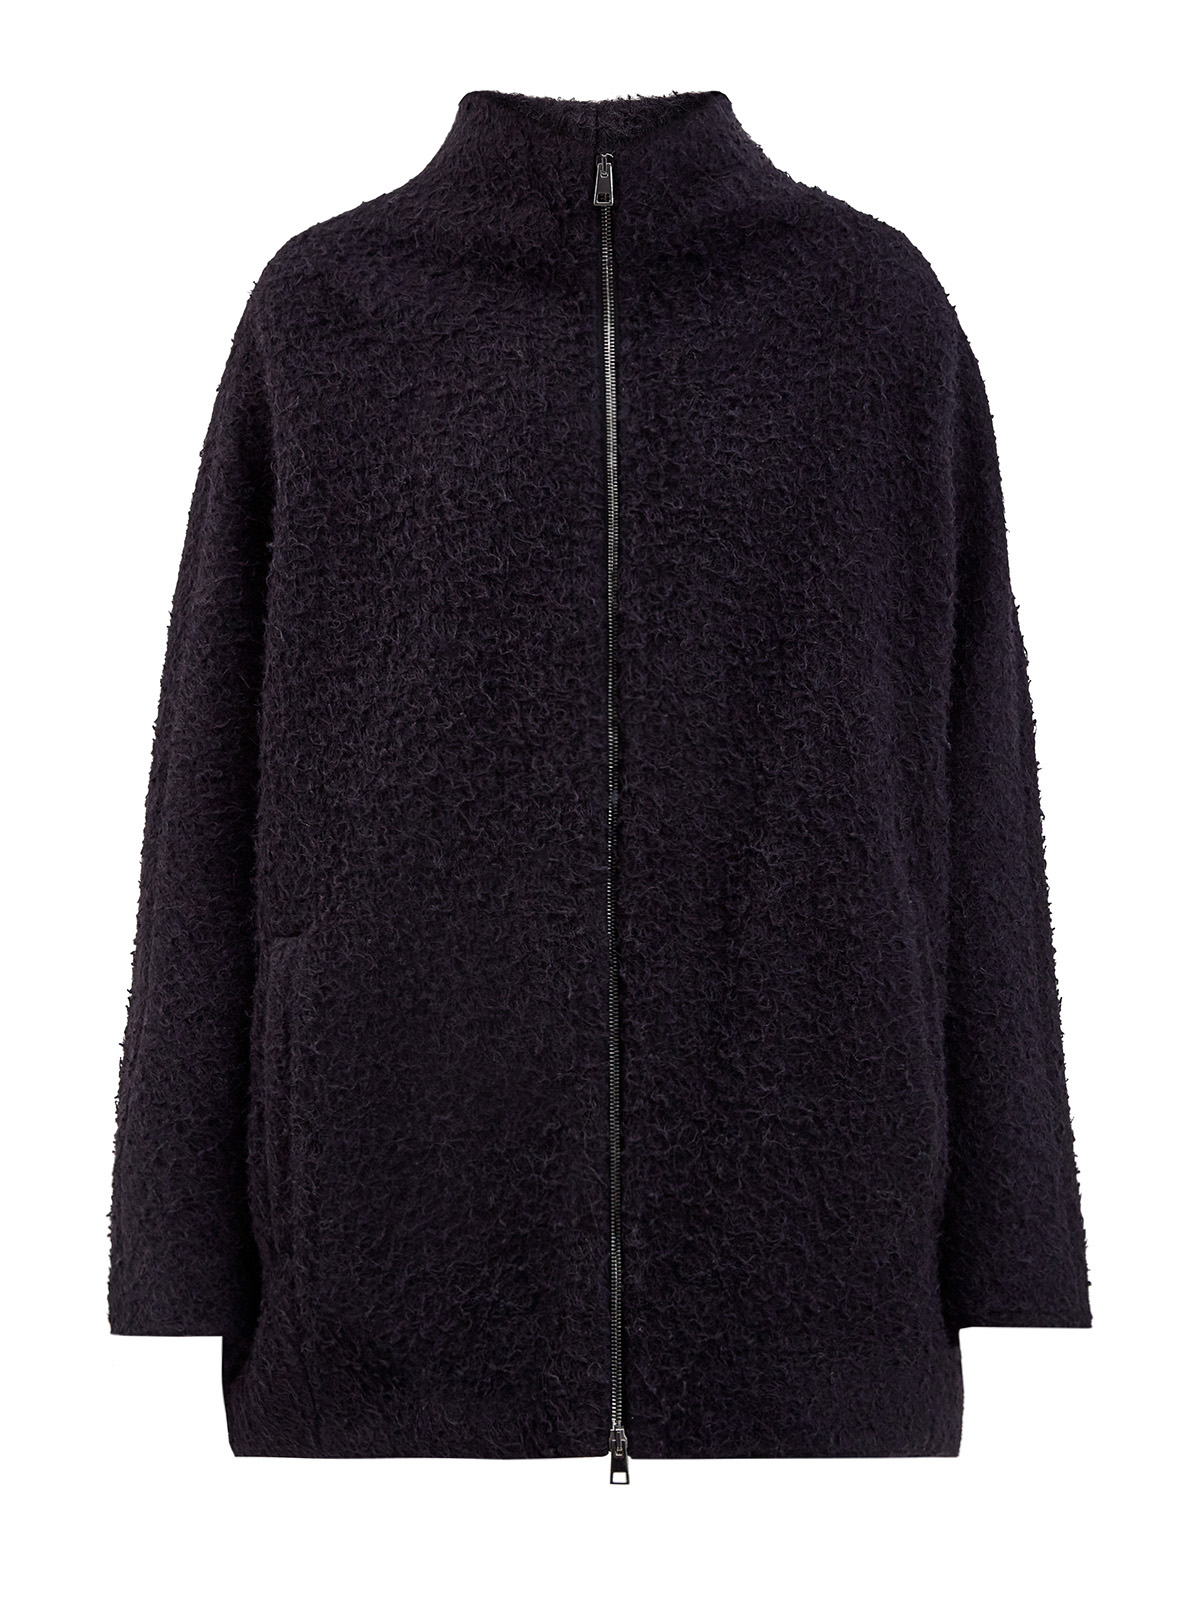 Свободное пальто из альпаки и шерсти с застежкой на молнию